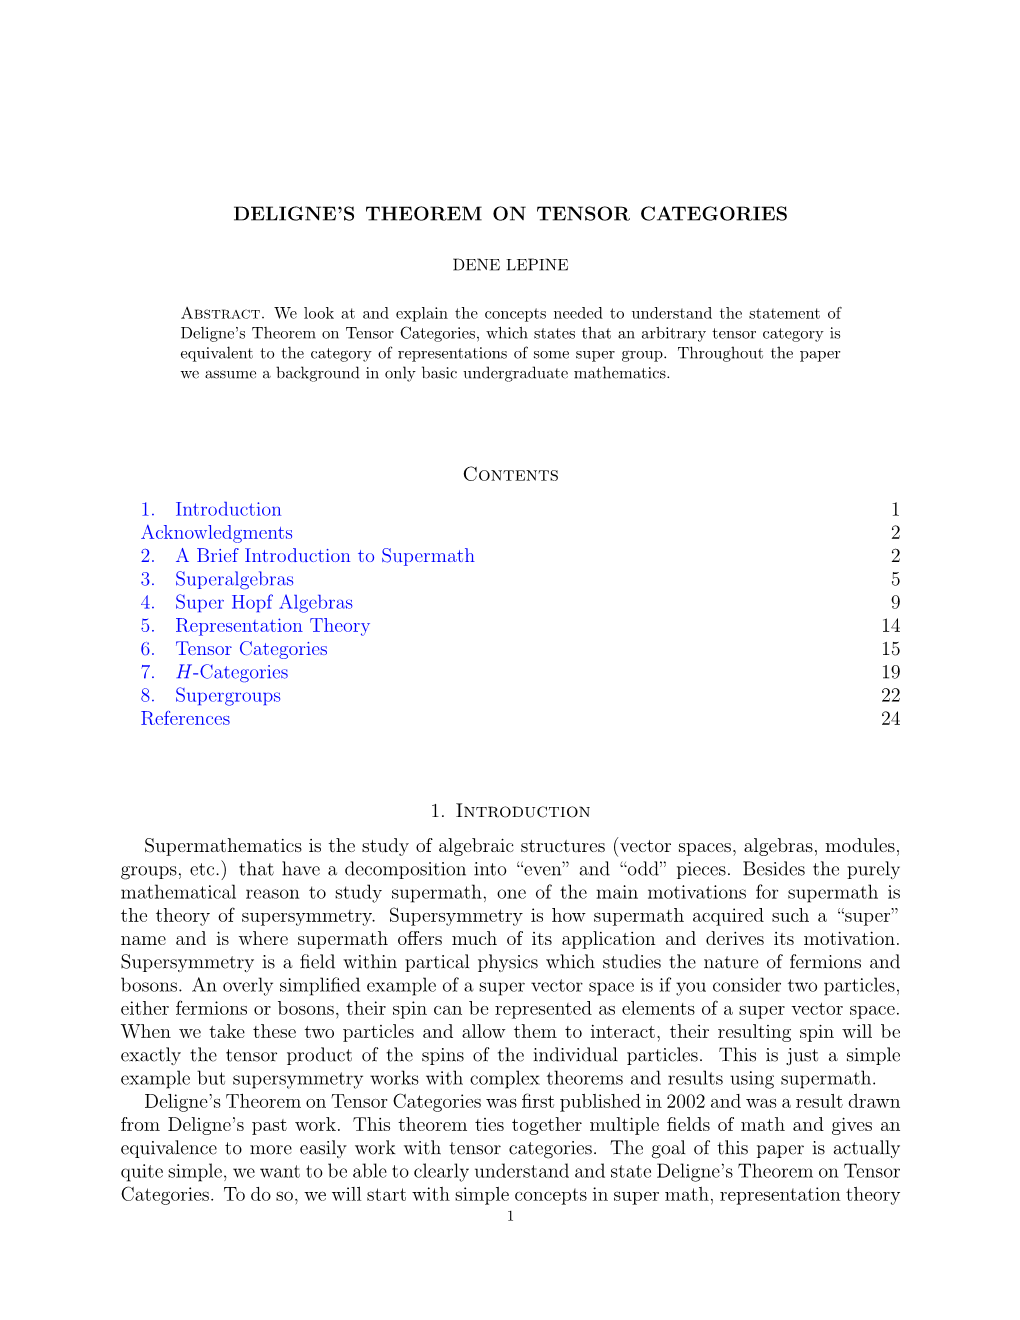 Deligne's Theorem on Tensor Categories